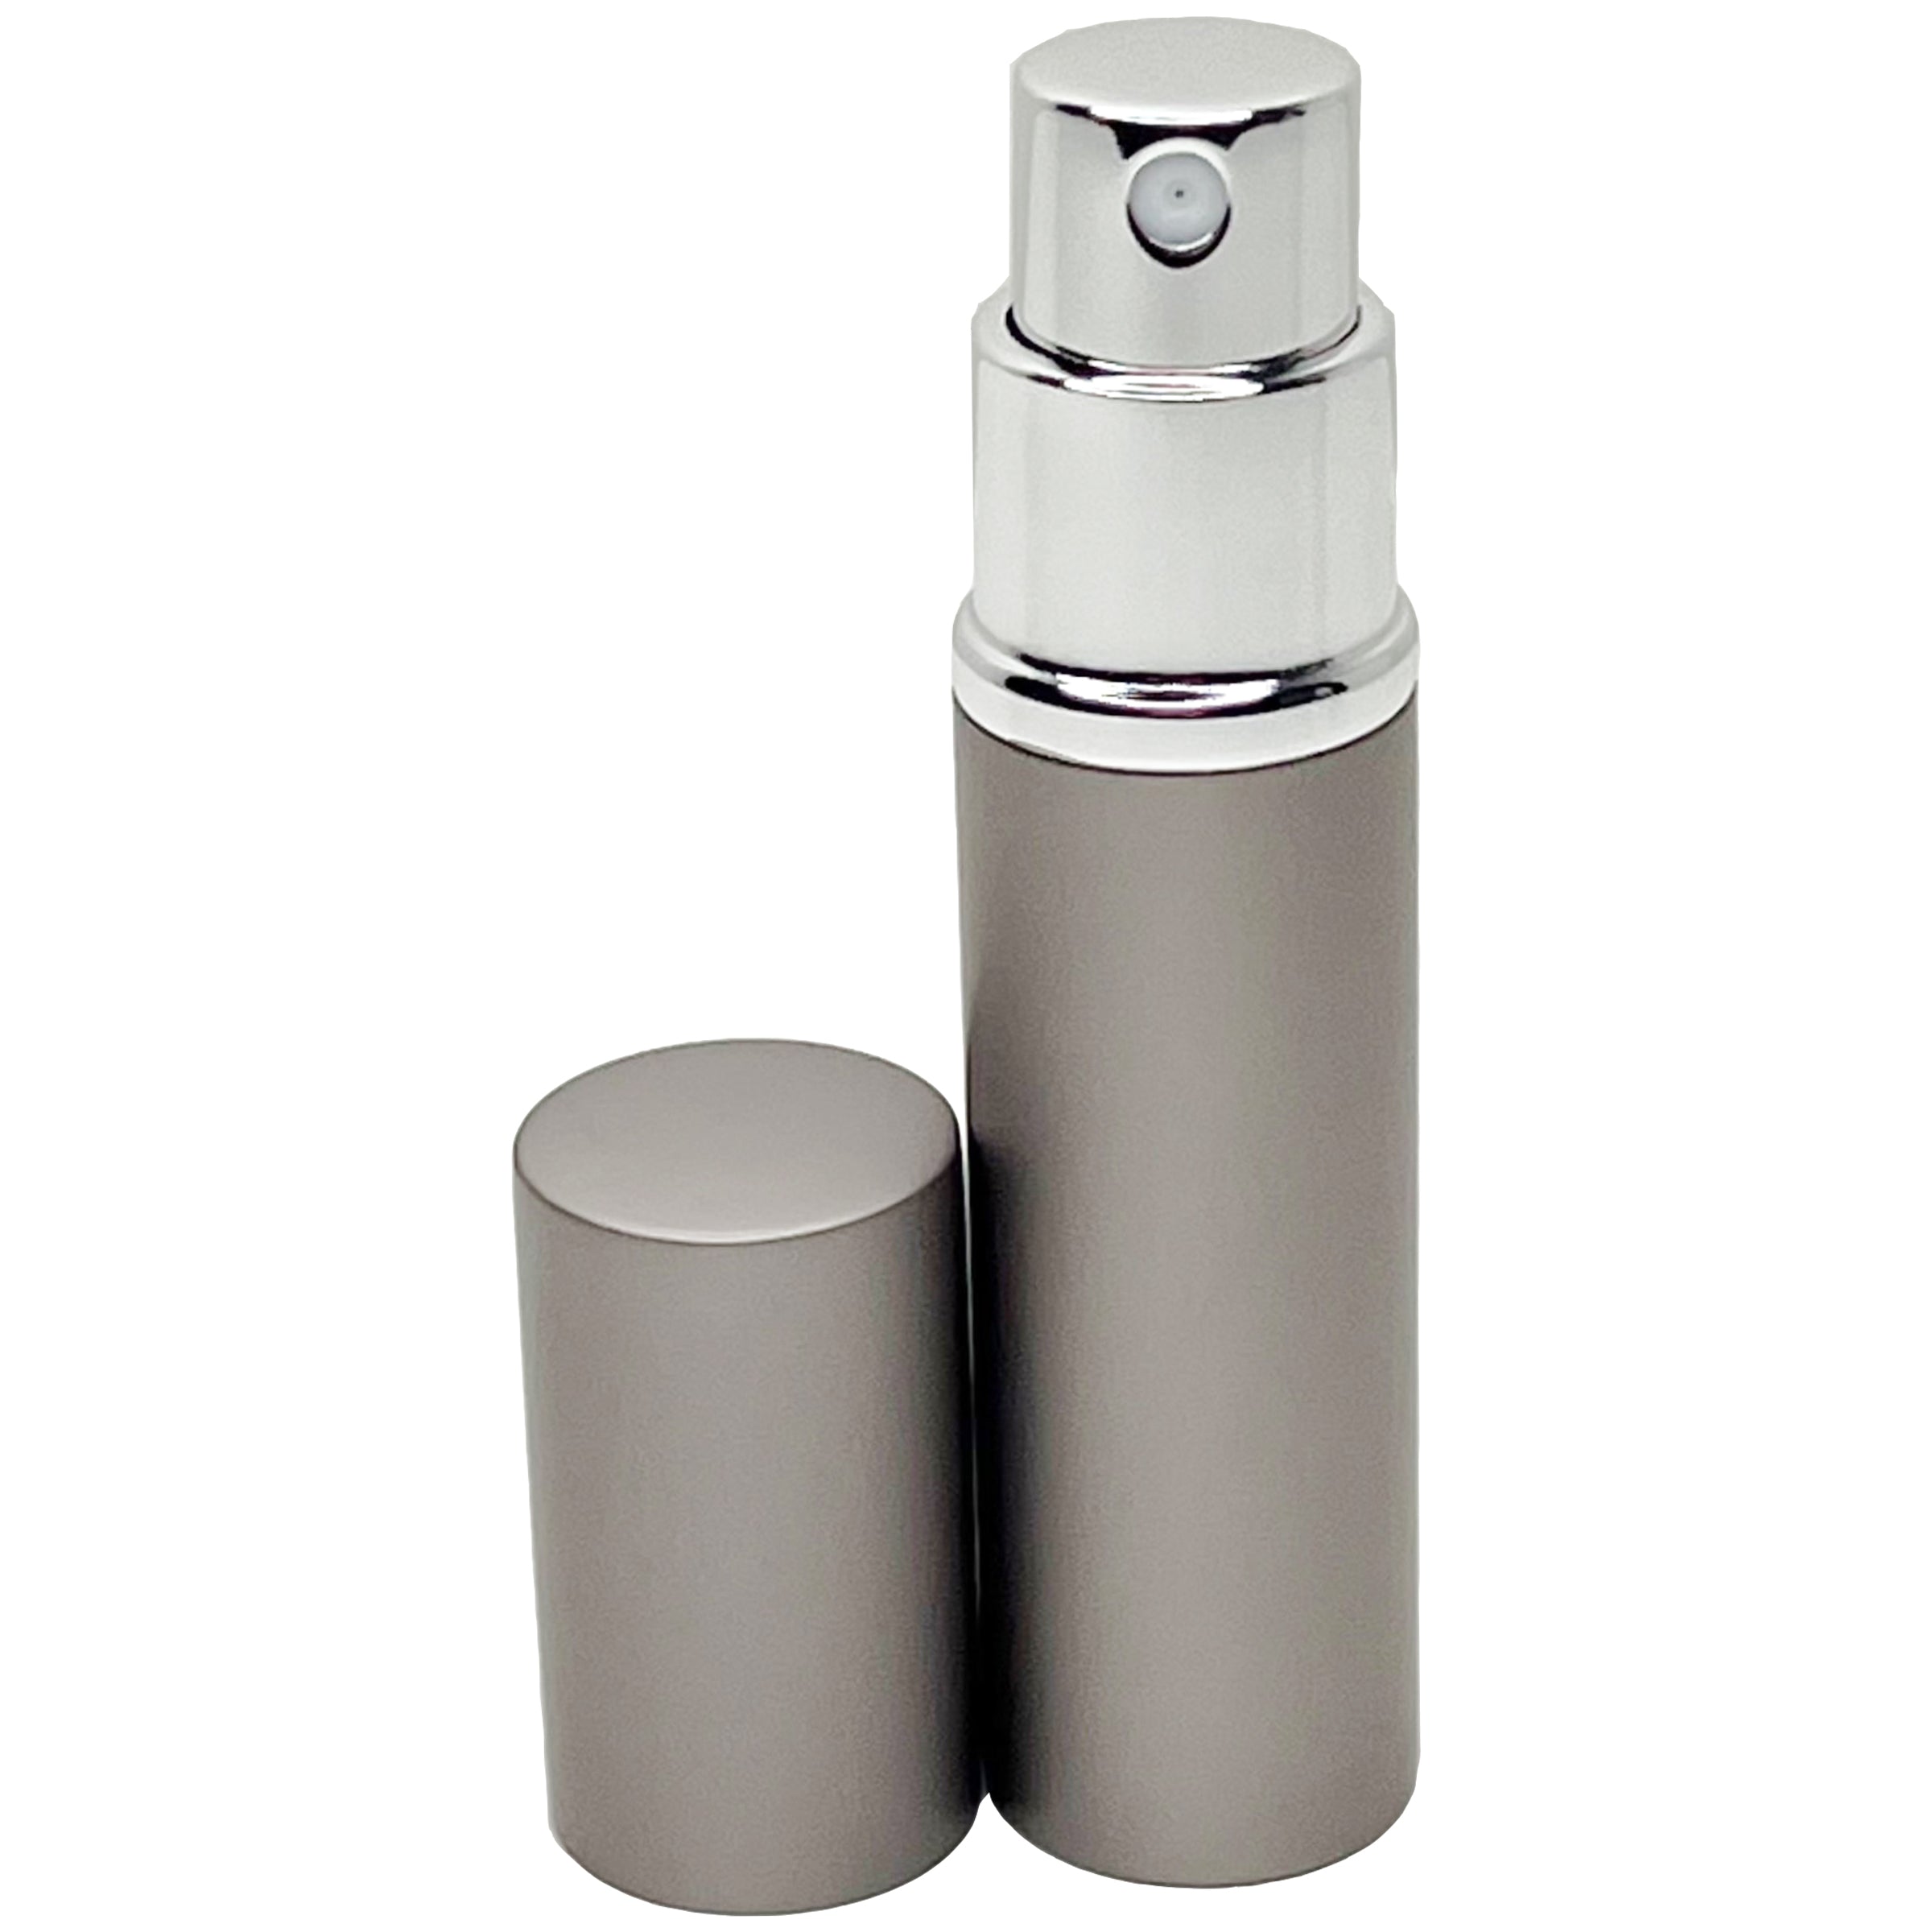 6ml 0.2oz perfume glass spray bottles gray aluminum shell